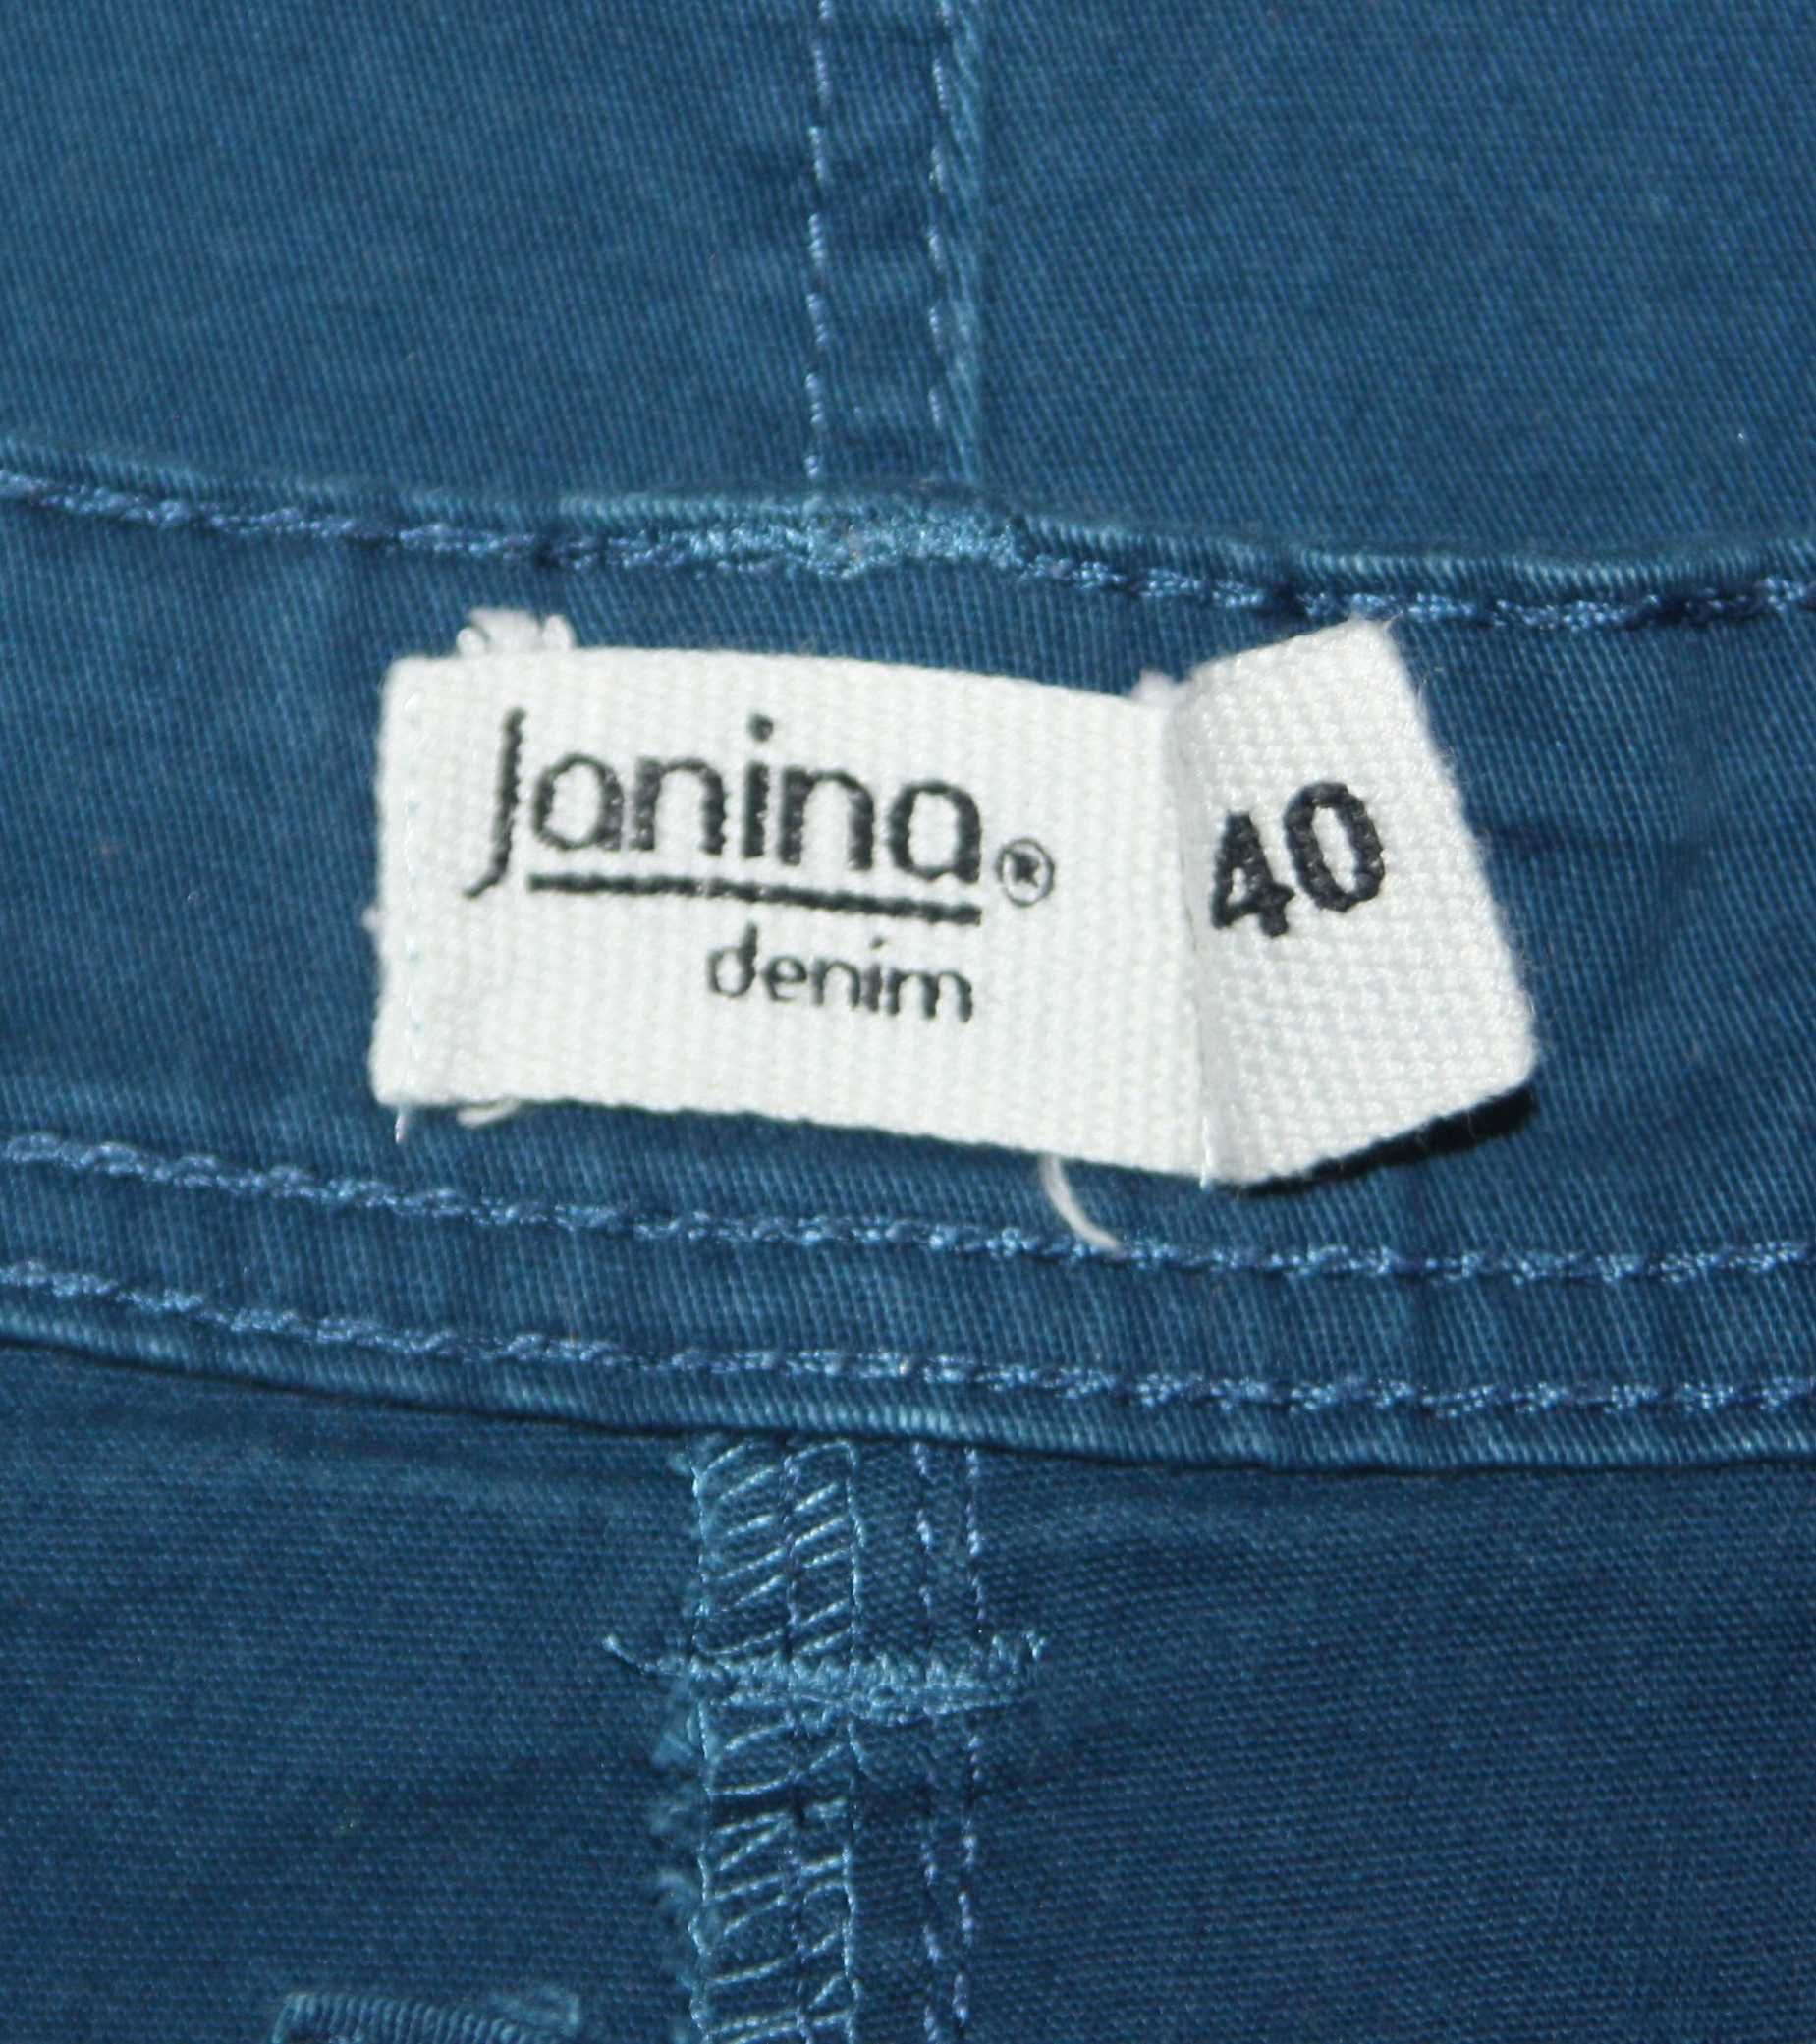 40 spódniczka damska JANINA denim elastyczna jak jeansowa